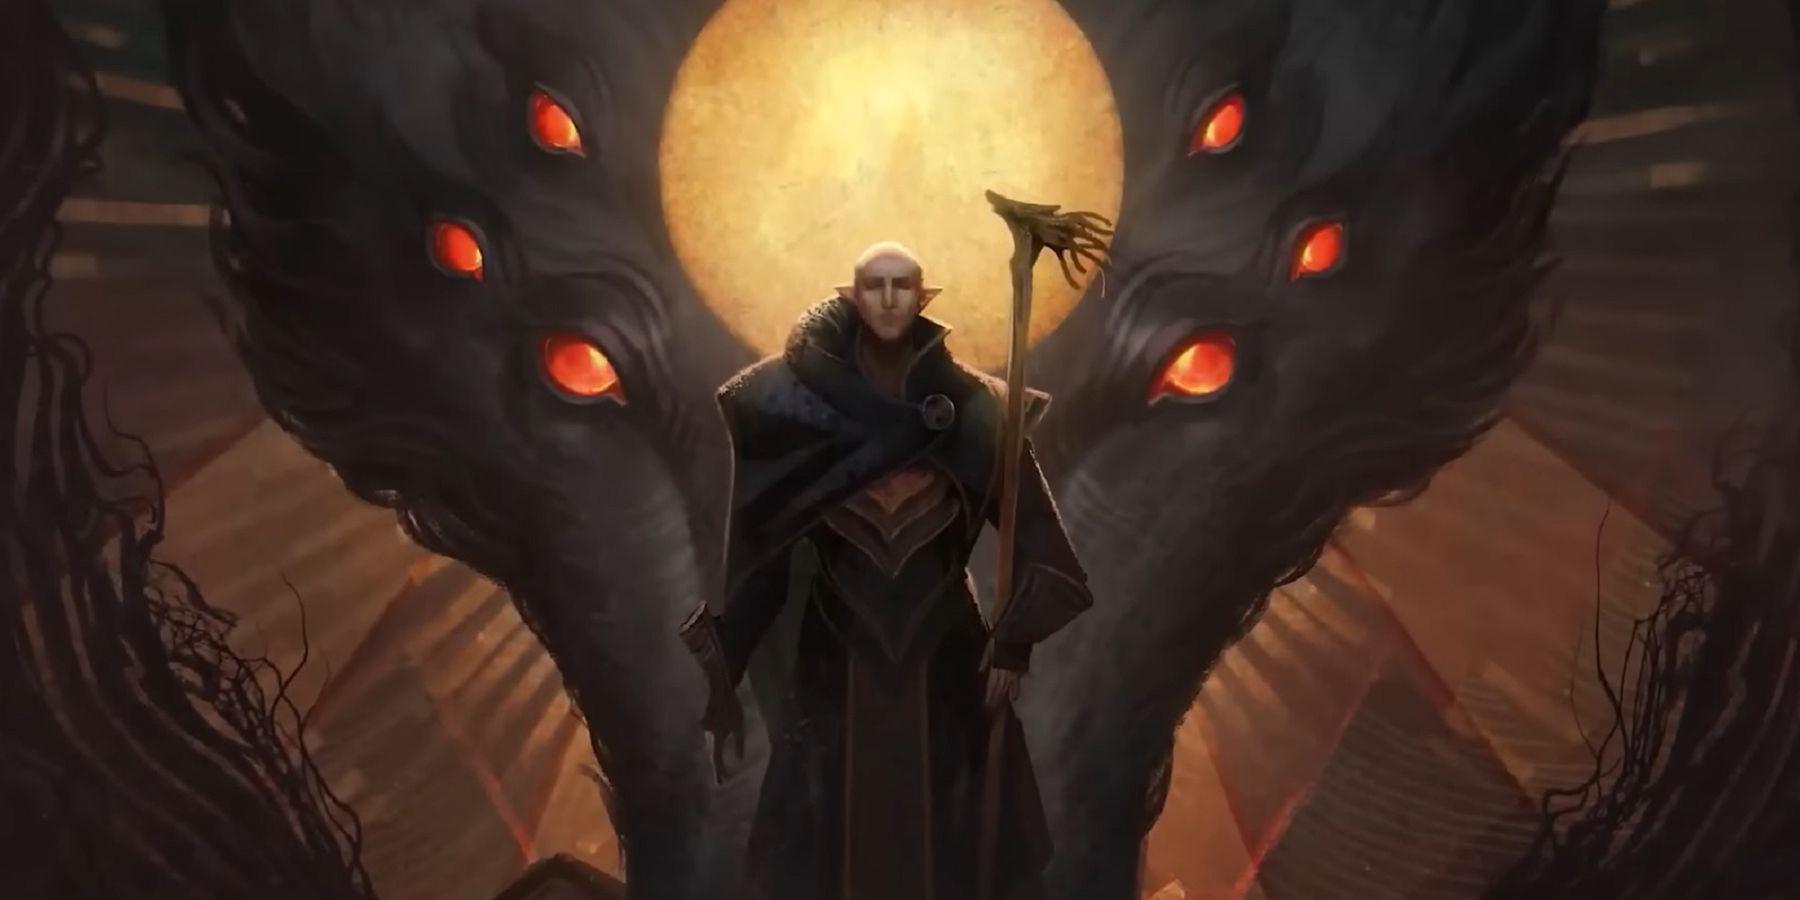 Imagens da jogabilidade de Dragon Age: Dreadwolf vazam online